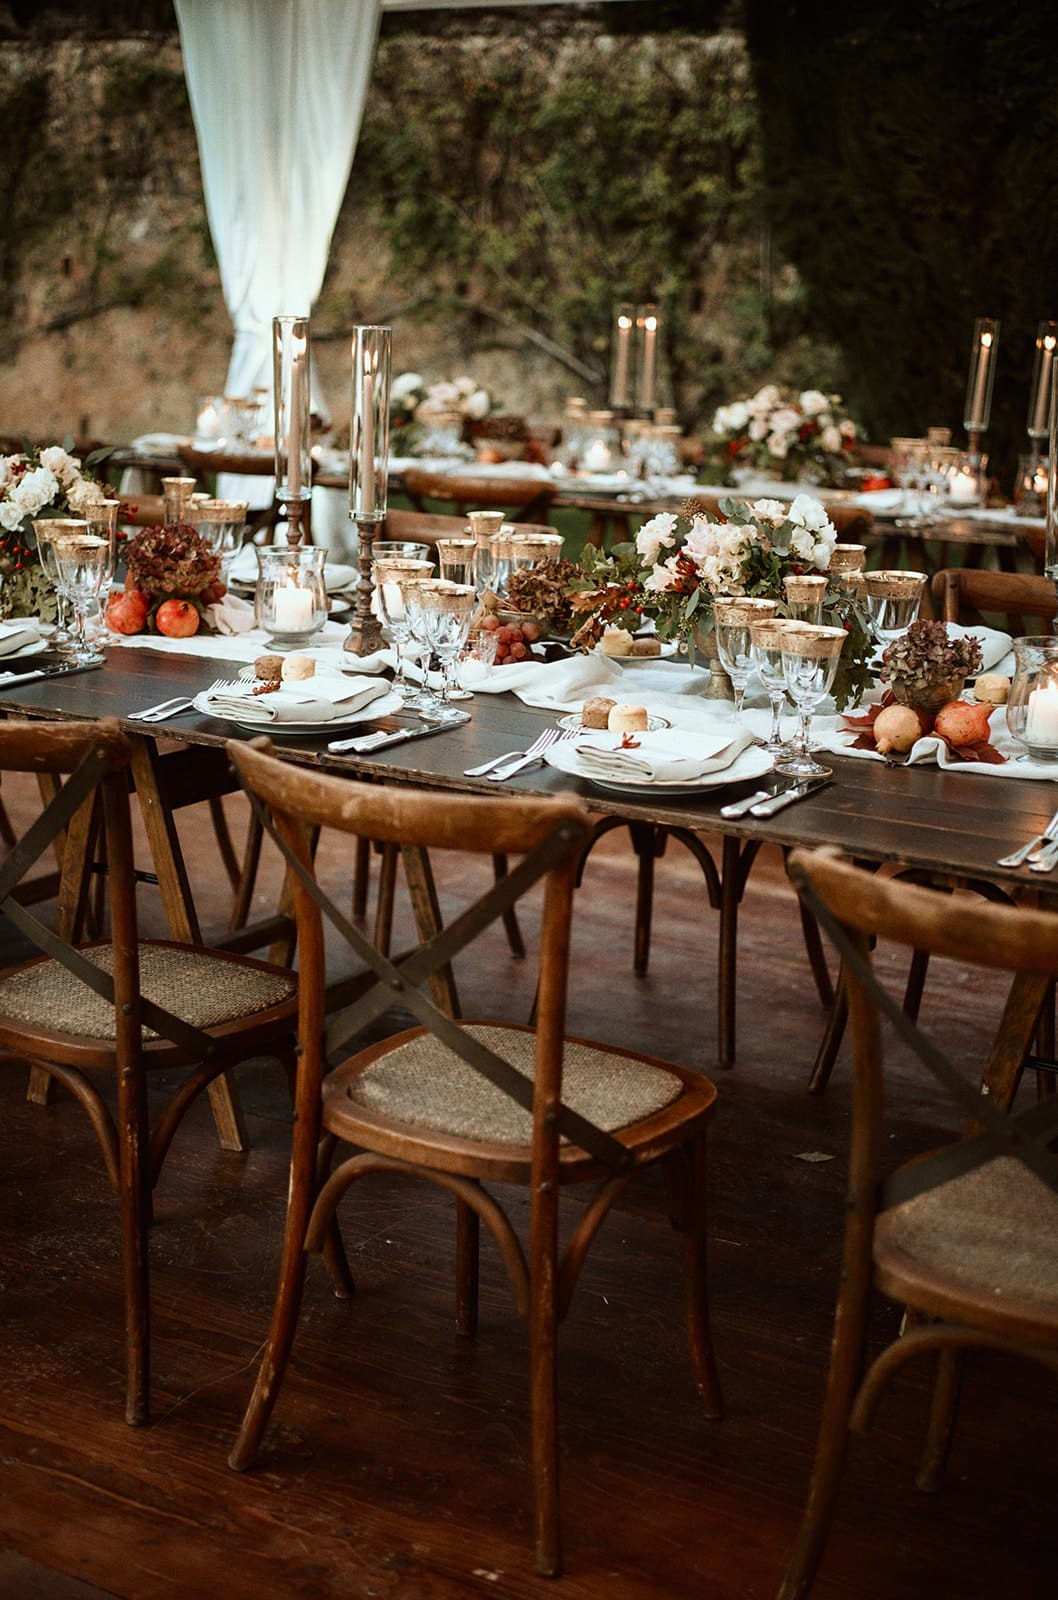 Villa Cetinale Wedding Reception - Wedding Reception at Villa Cetinale in Siena, Tuscany